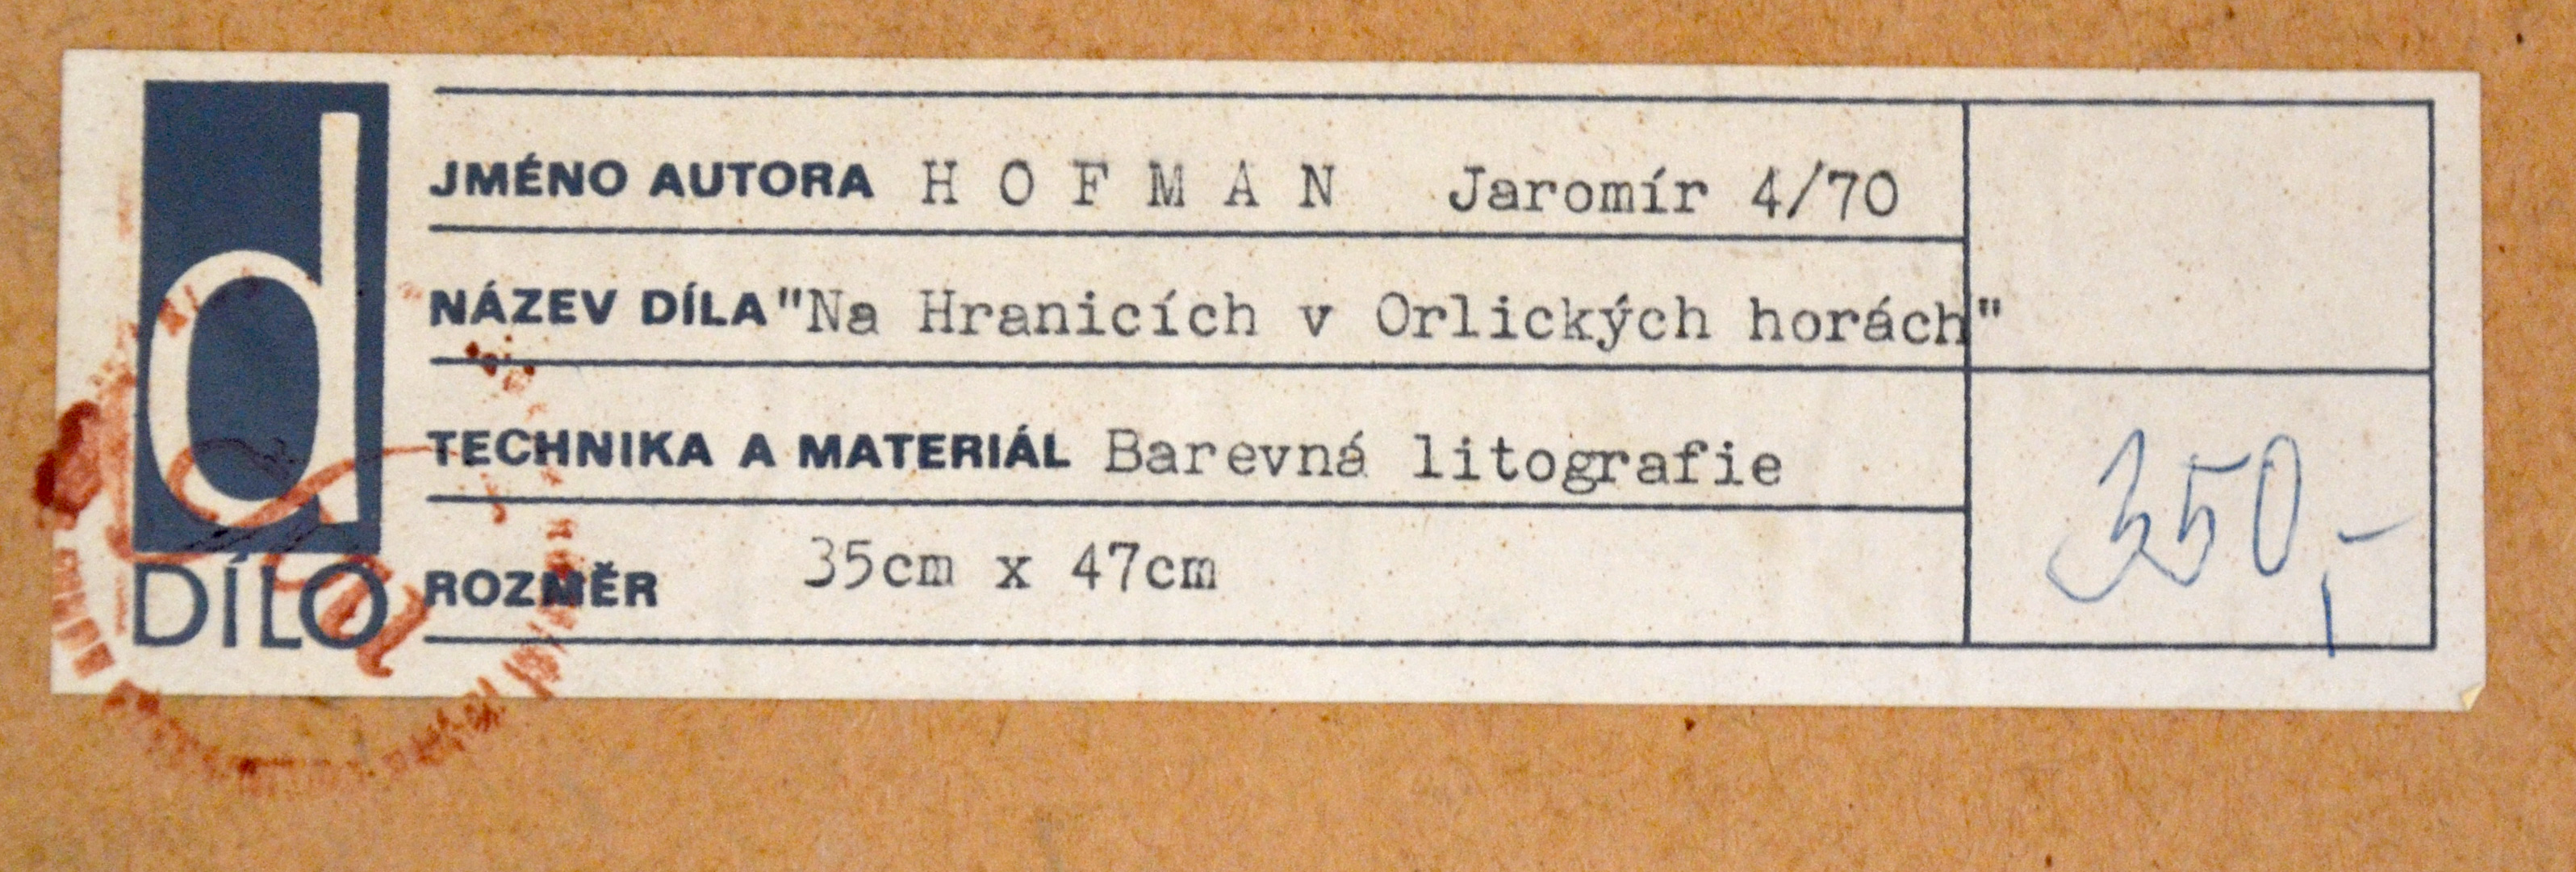 Jaromír Hofman litografie, 56x41,5, 47x35 (5)